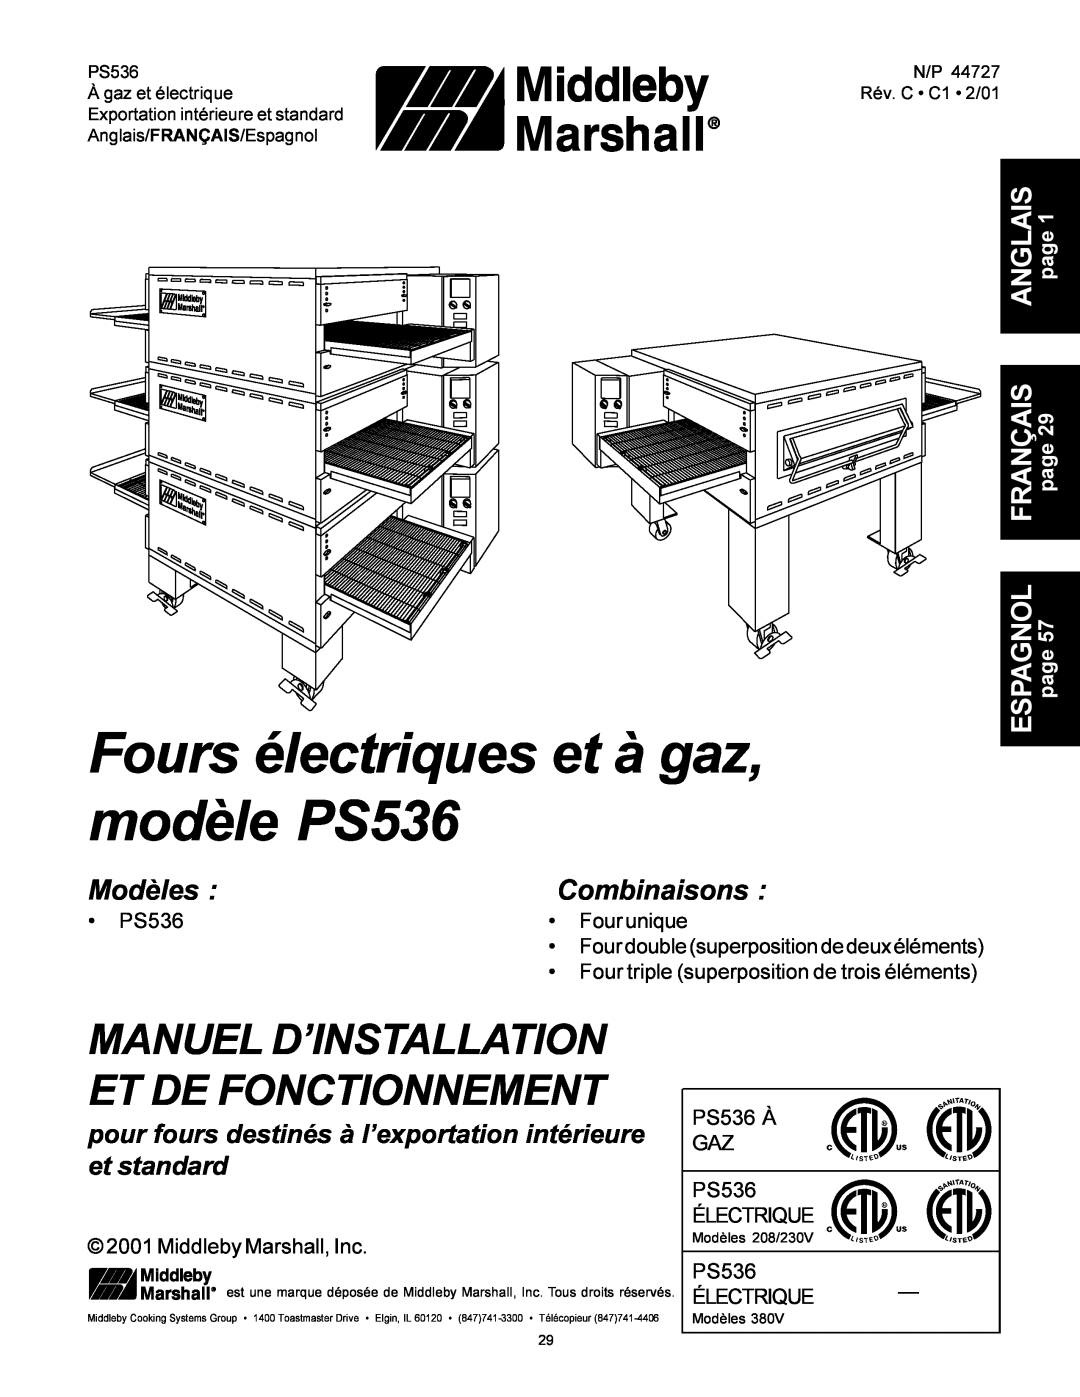 Middleby Marshall Model PS536 Fours électriques et à gaz, modèle PS536, Manuel D’Installation Et De Fonctionnement 